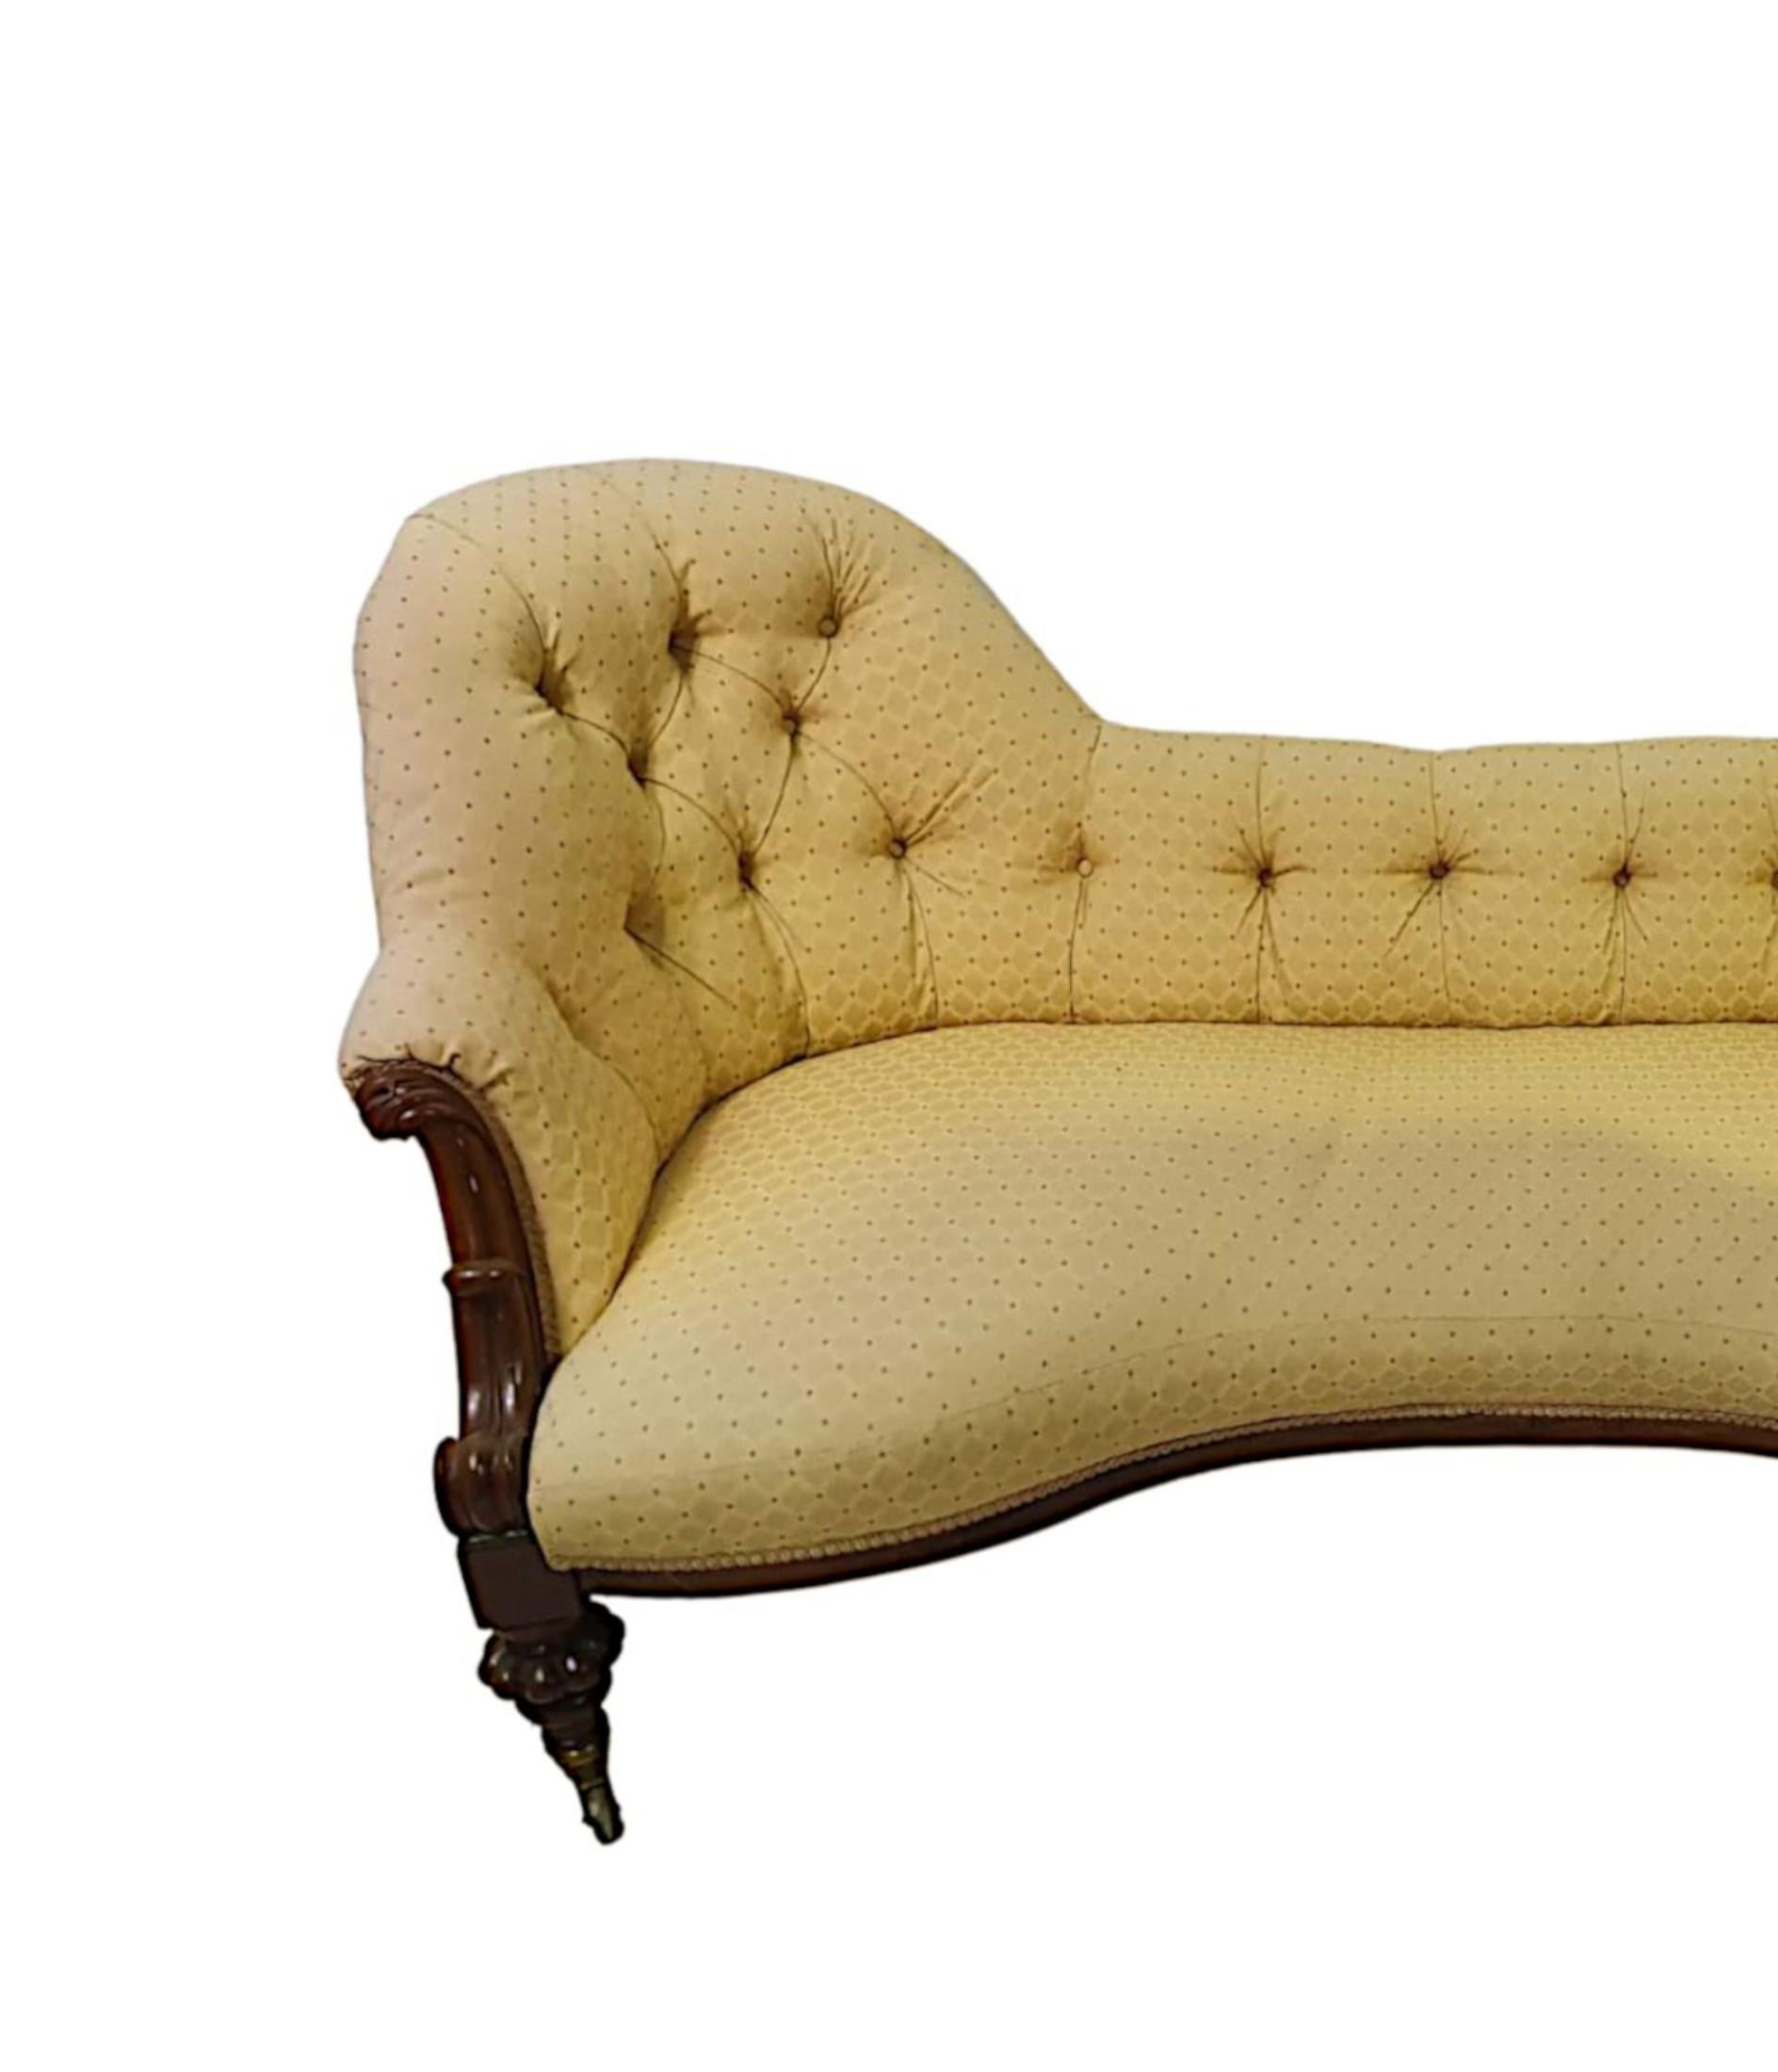 Magnifique canapé à dos d'âne en bois fruitier du 19e siècle. Le dossier à boutons de forme magnifique est surmonté d'un siège serpentin flanqué de supports d'accoudoirs à volutes finement sculptés à la main, au-dessus d'une frise simple soutenue